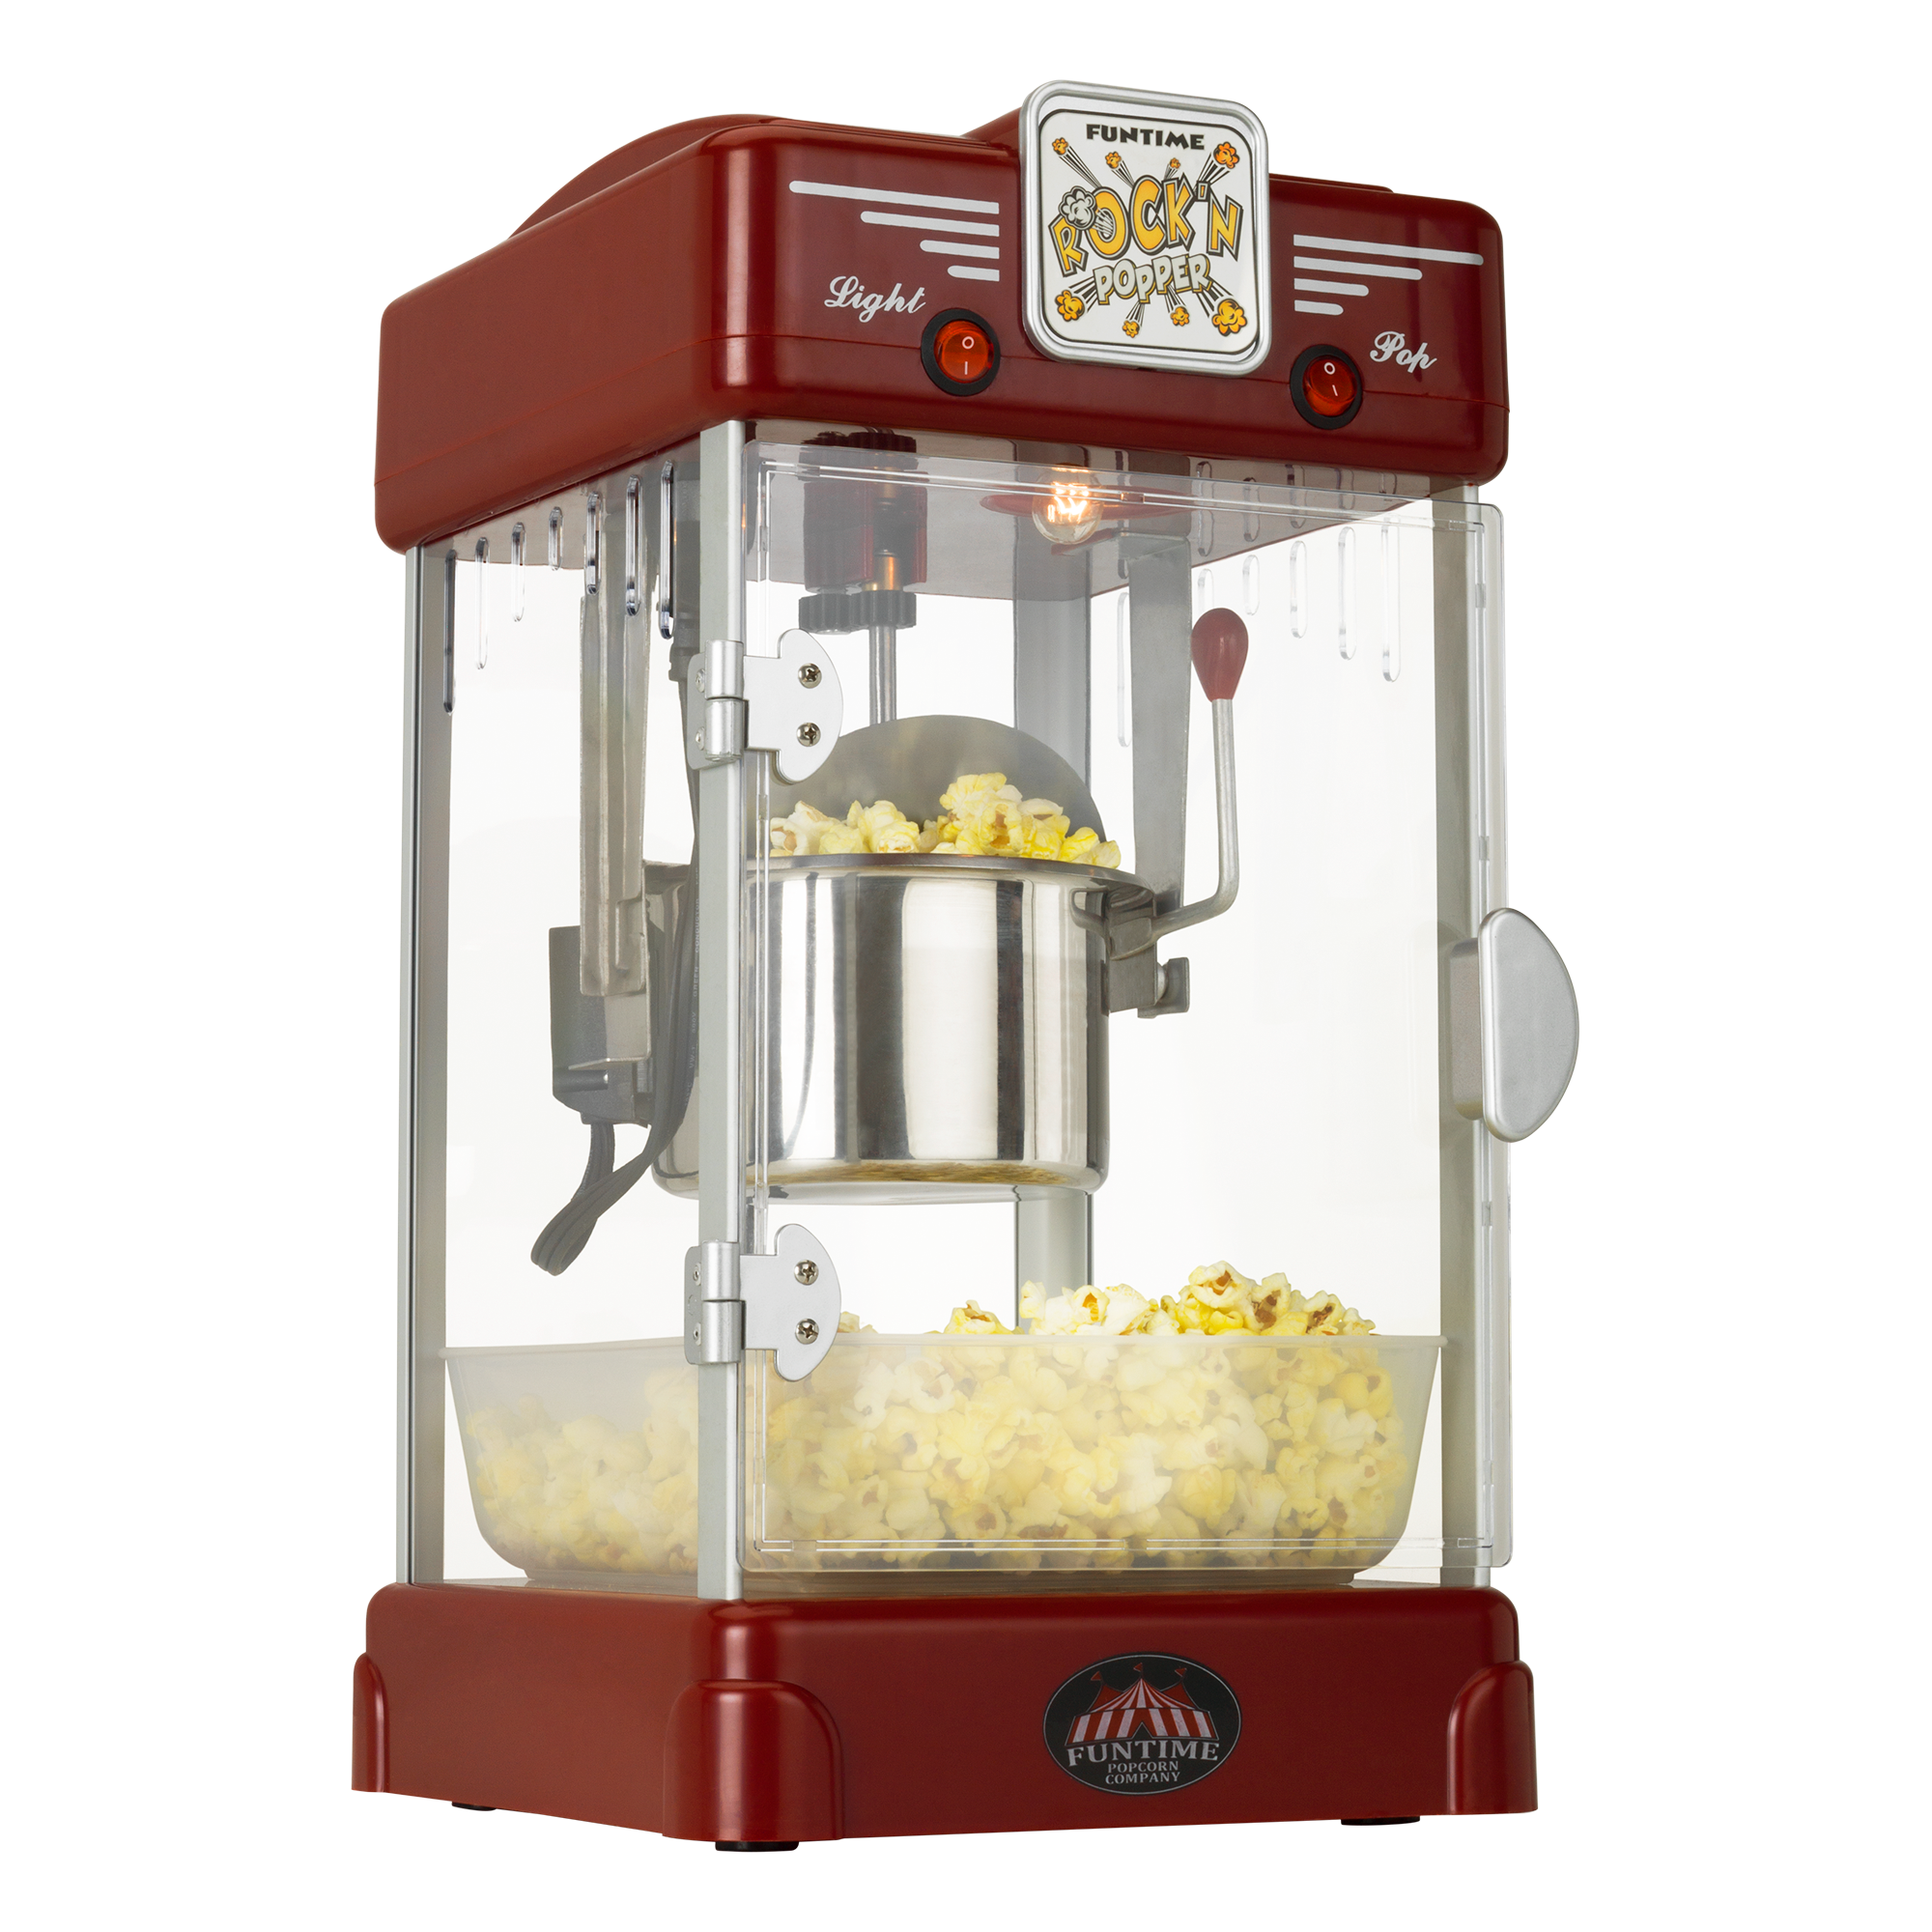 where can i find a popcorn machine